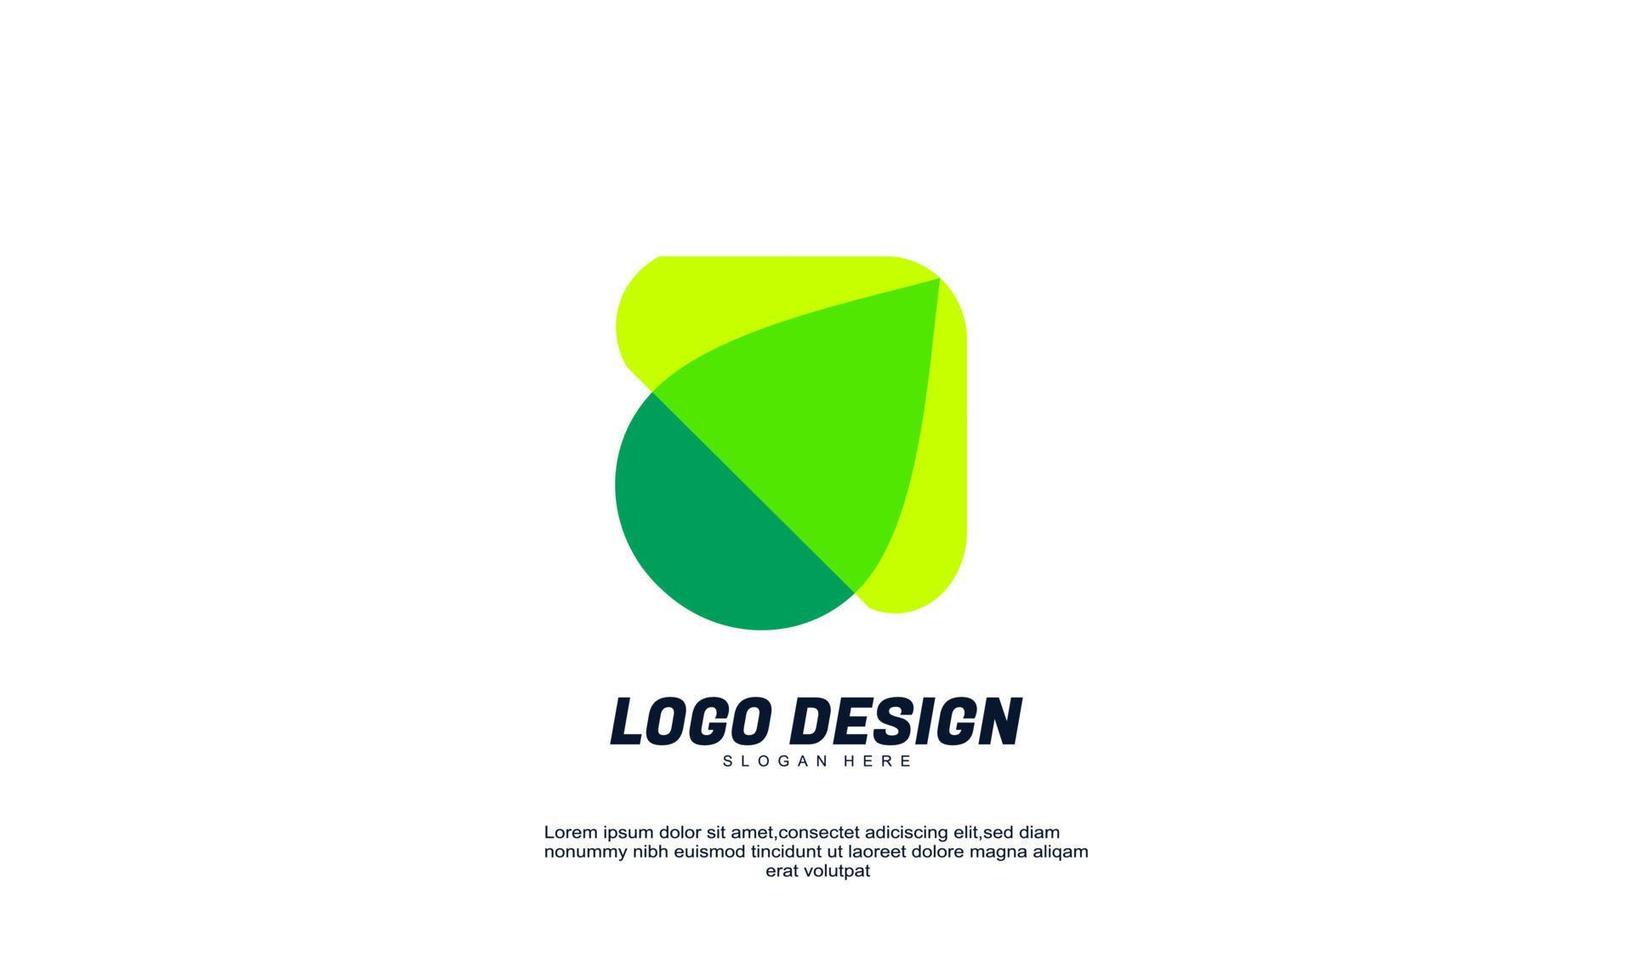 elemento de logotipo de design de empresa criativa abstrata incrível com modelo de cartão de visita melhor para identidade de marca e vetor de logotipo